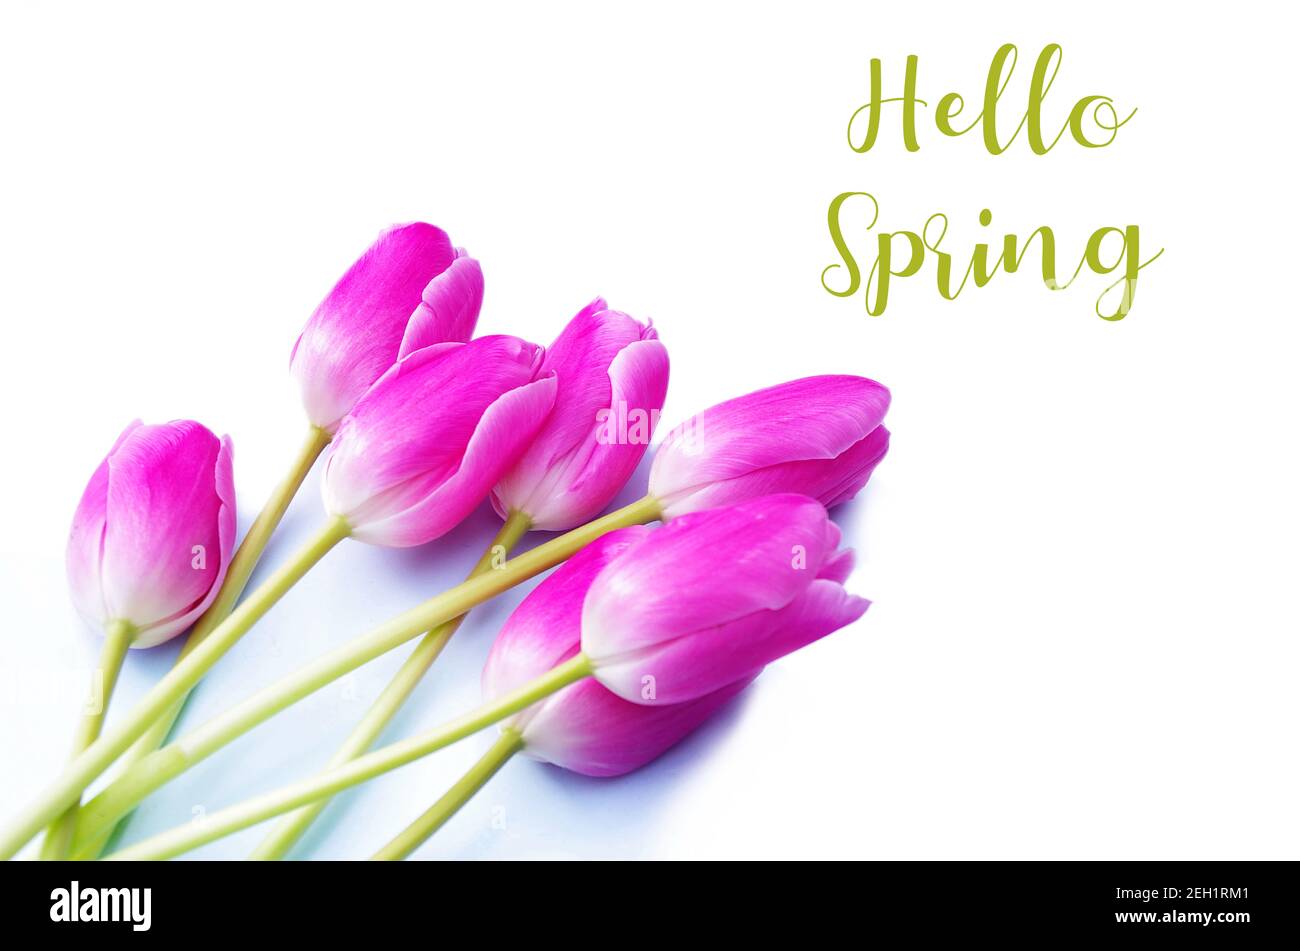 Hallo Frühling Text-Zeichen, schöne rosa Tulpen auf weißem Hintergrund flach legen. Frühlingskonzept und Happy easter Grußkarte, Geschenk, Poster, Webkonzept. Stockfoto